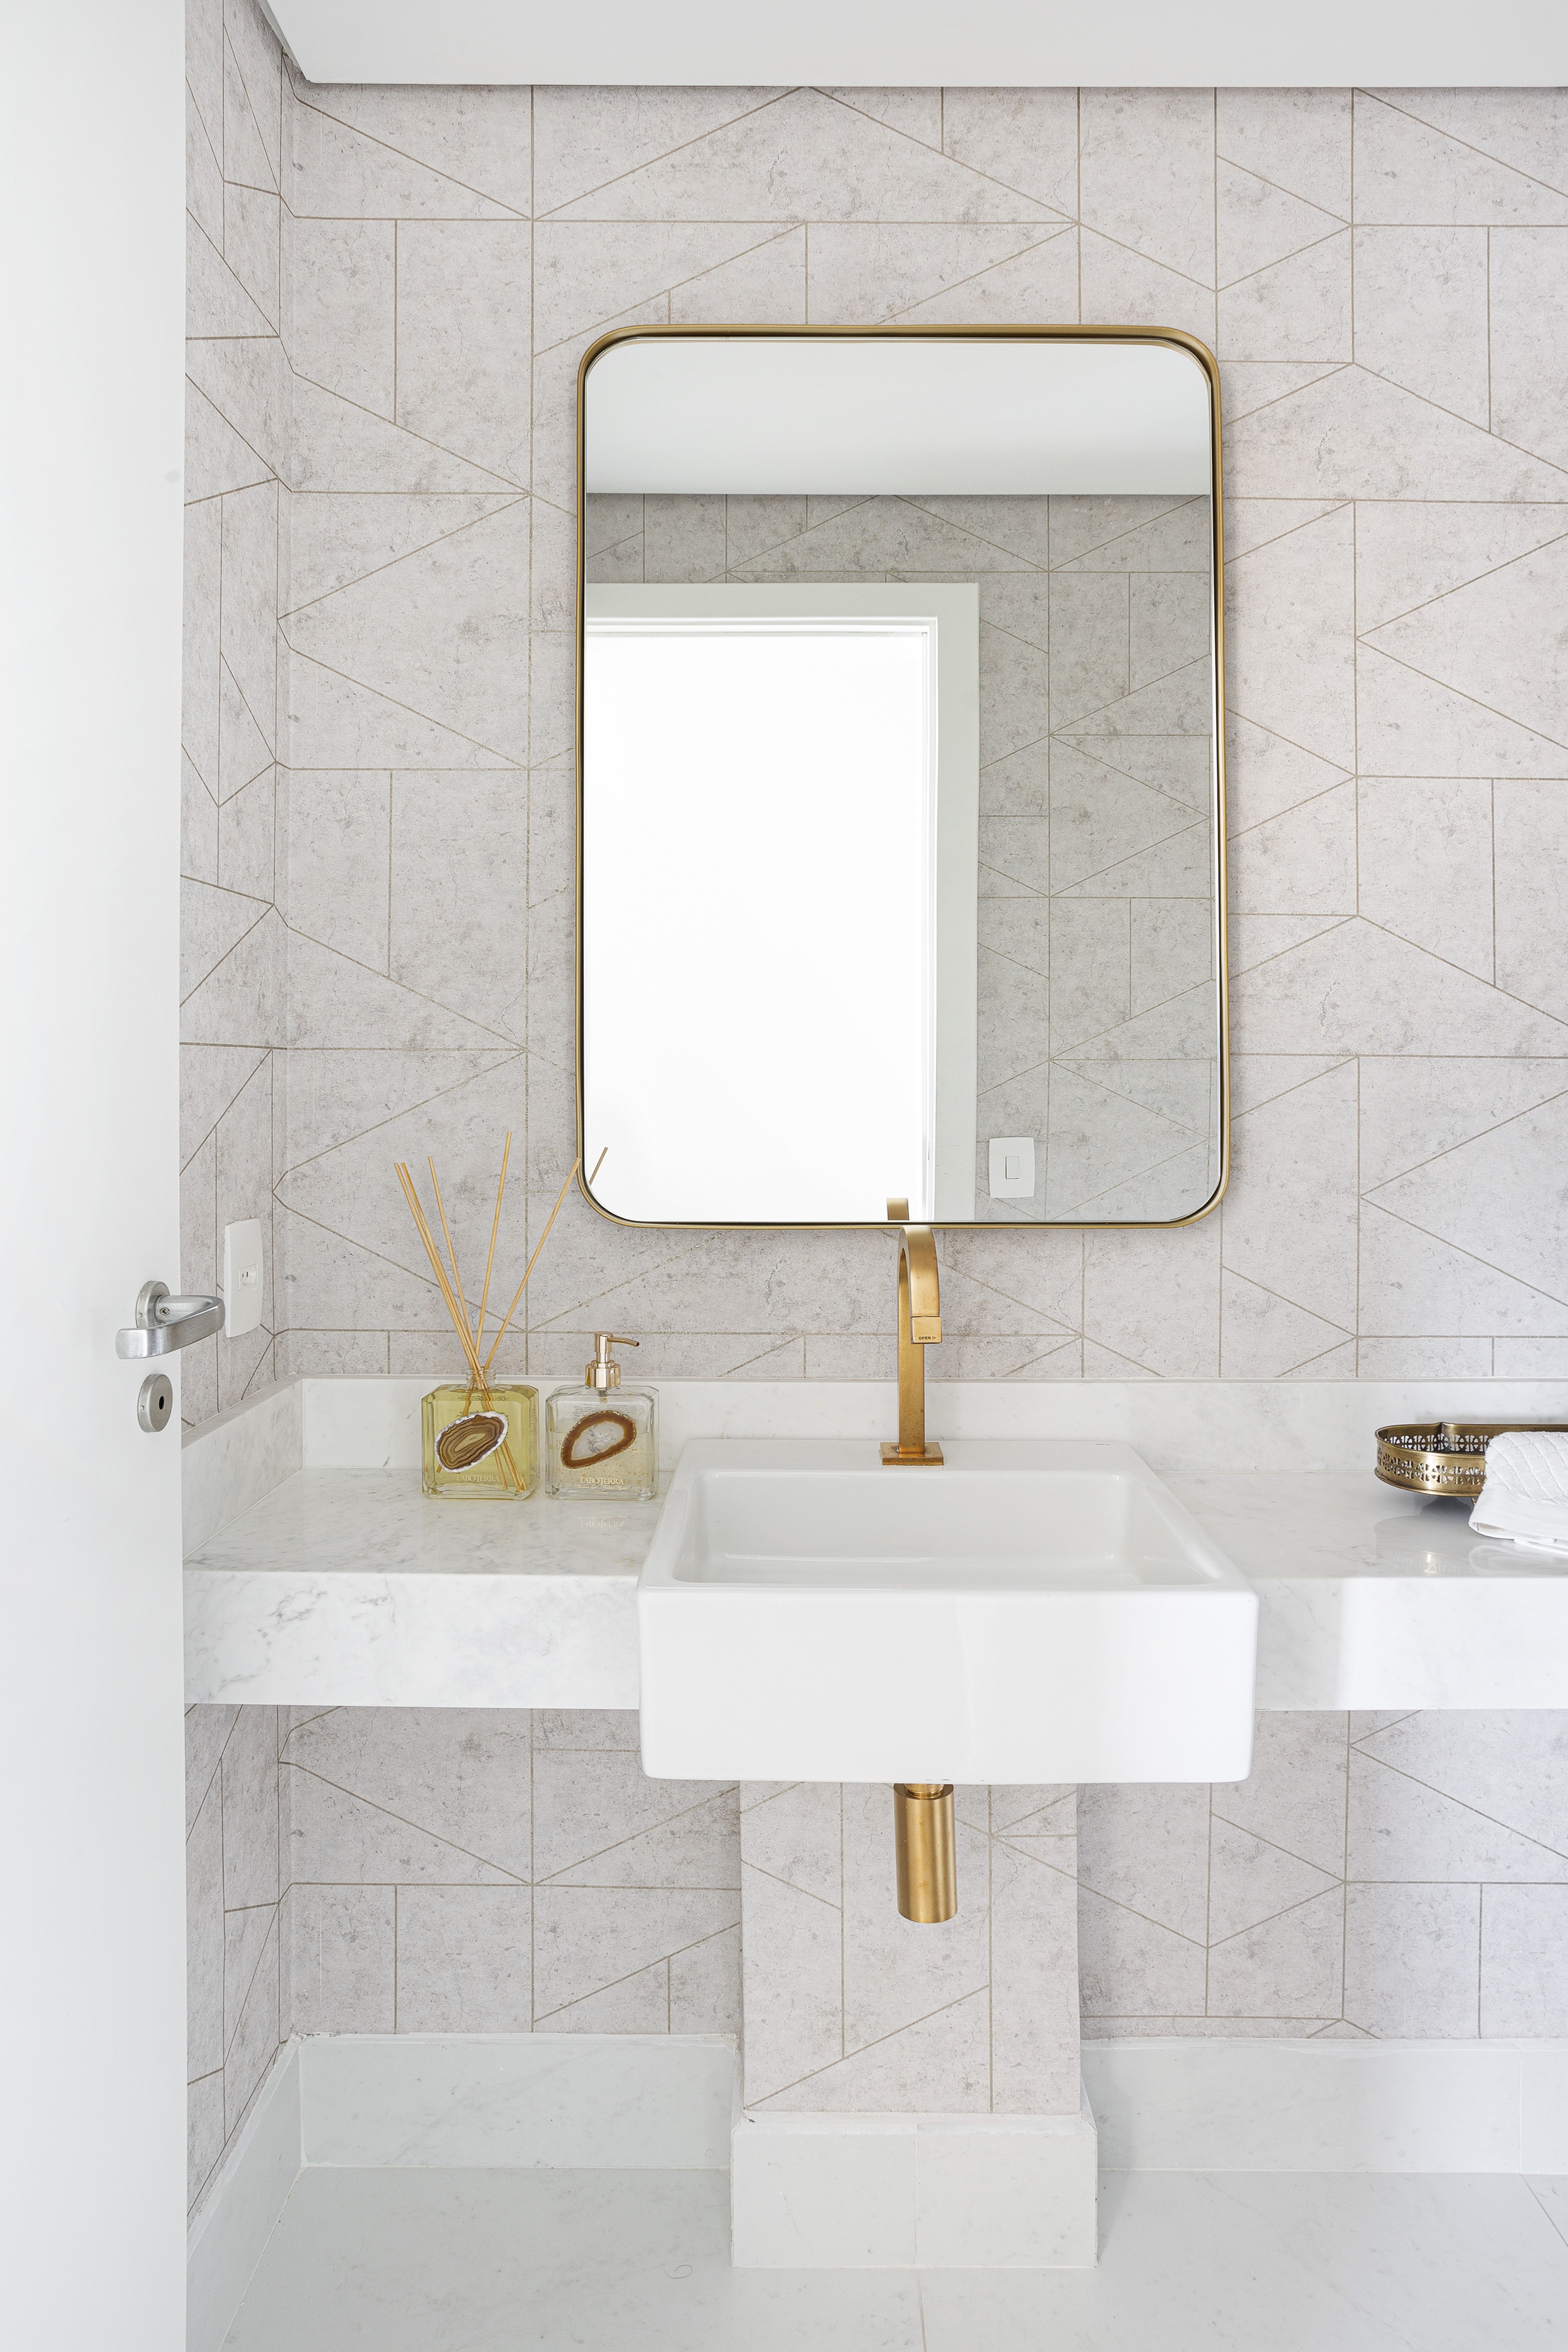 Décor do dia: lavabo com pendentes e papel de parede geométrico (Foto: Júlia Ribeiro)